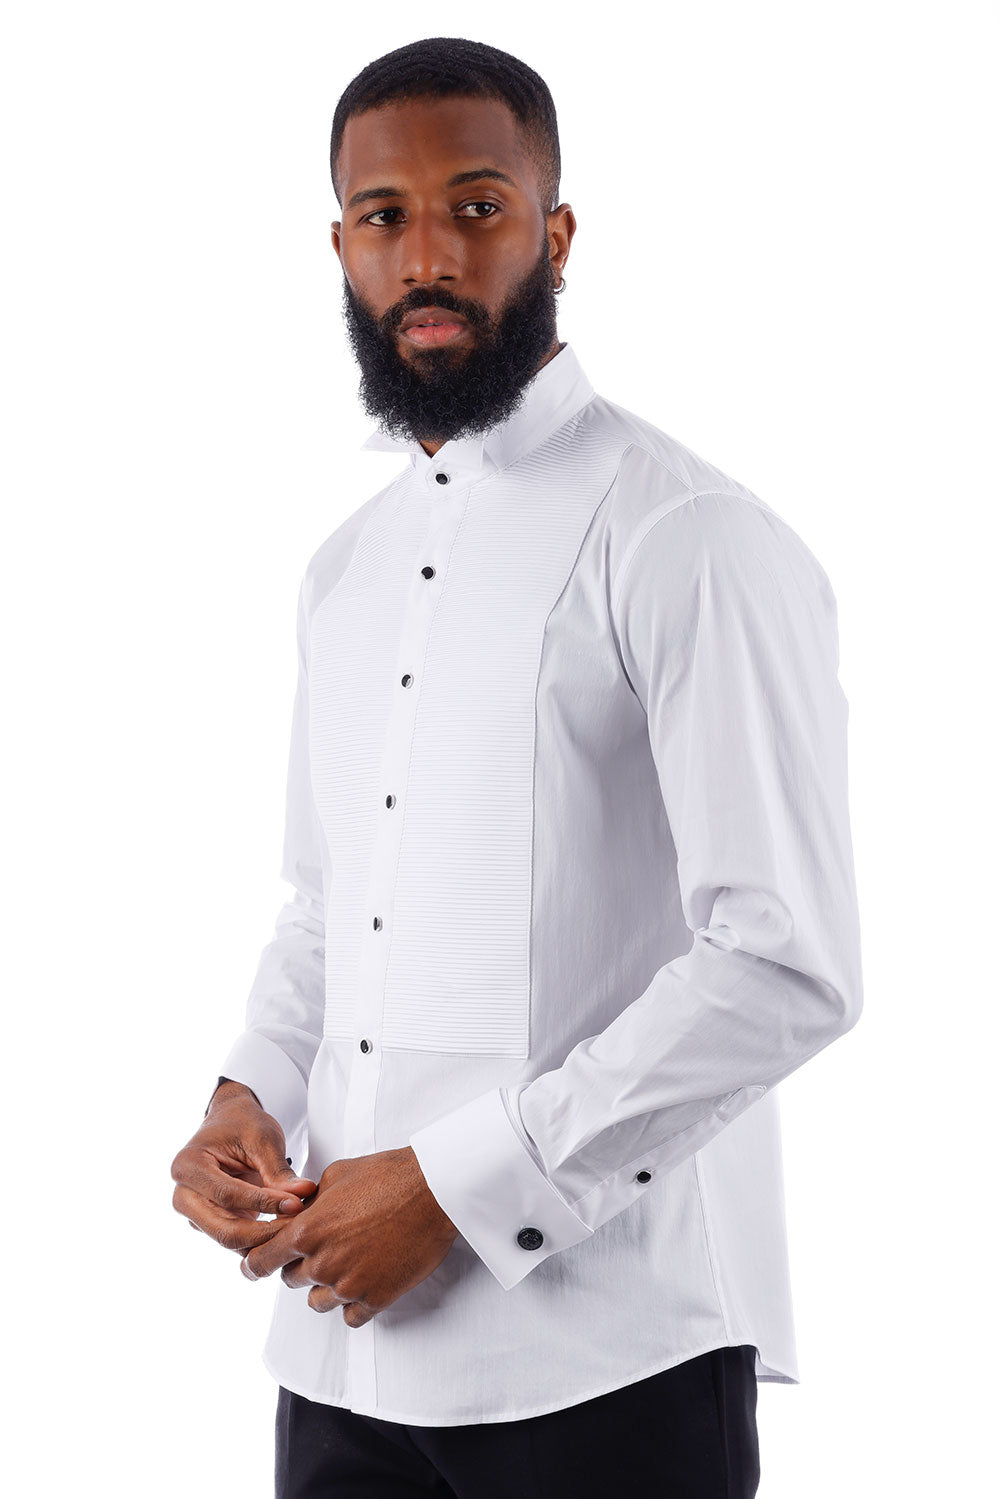 BARABAS Men's Solid Color Tuxedo Button Down Long Sleeve Shirt 4txs01 white